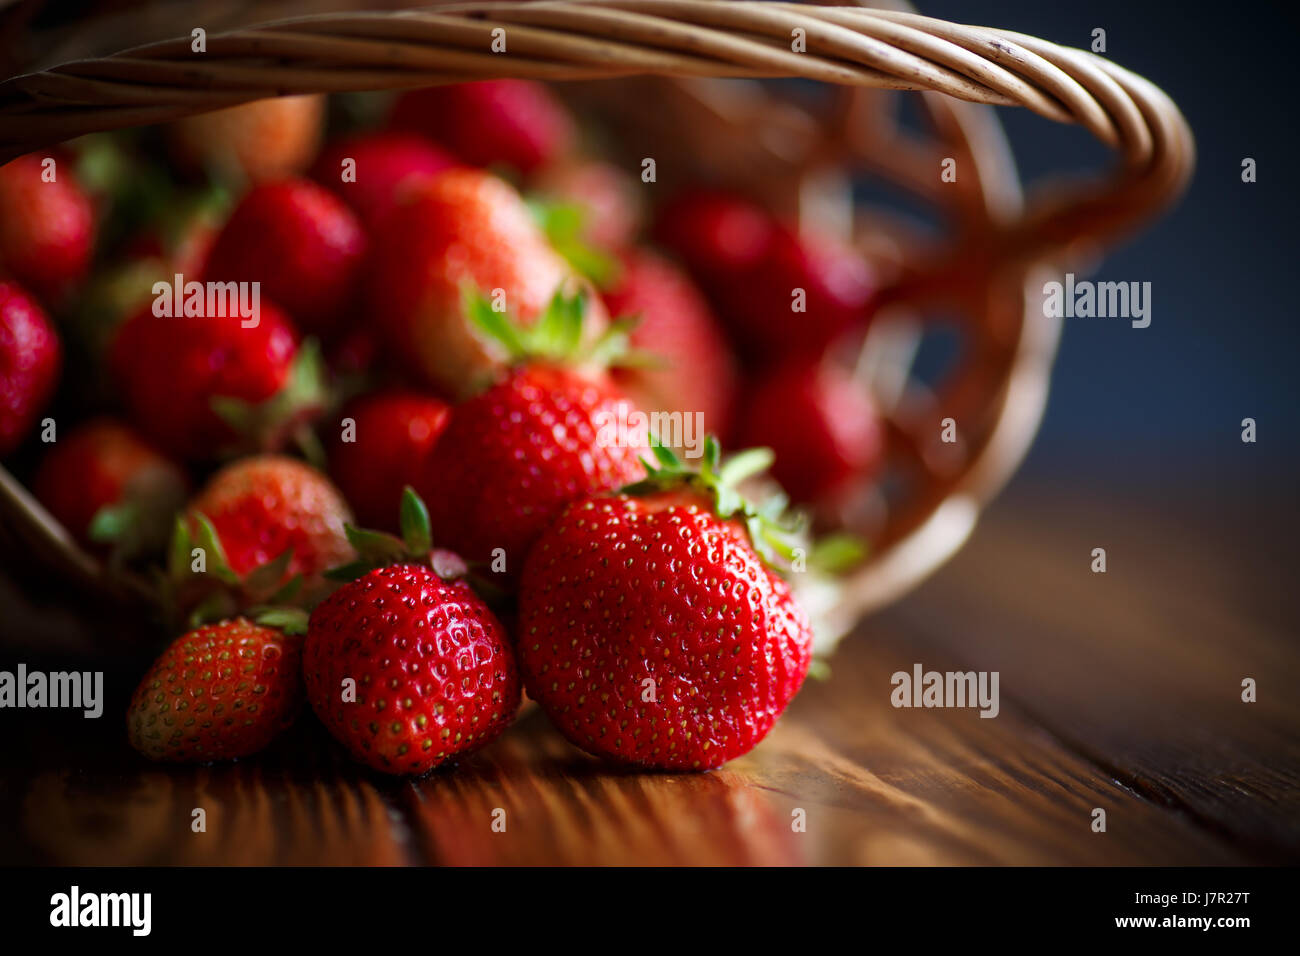 ripe red strawberries Stock Photo